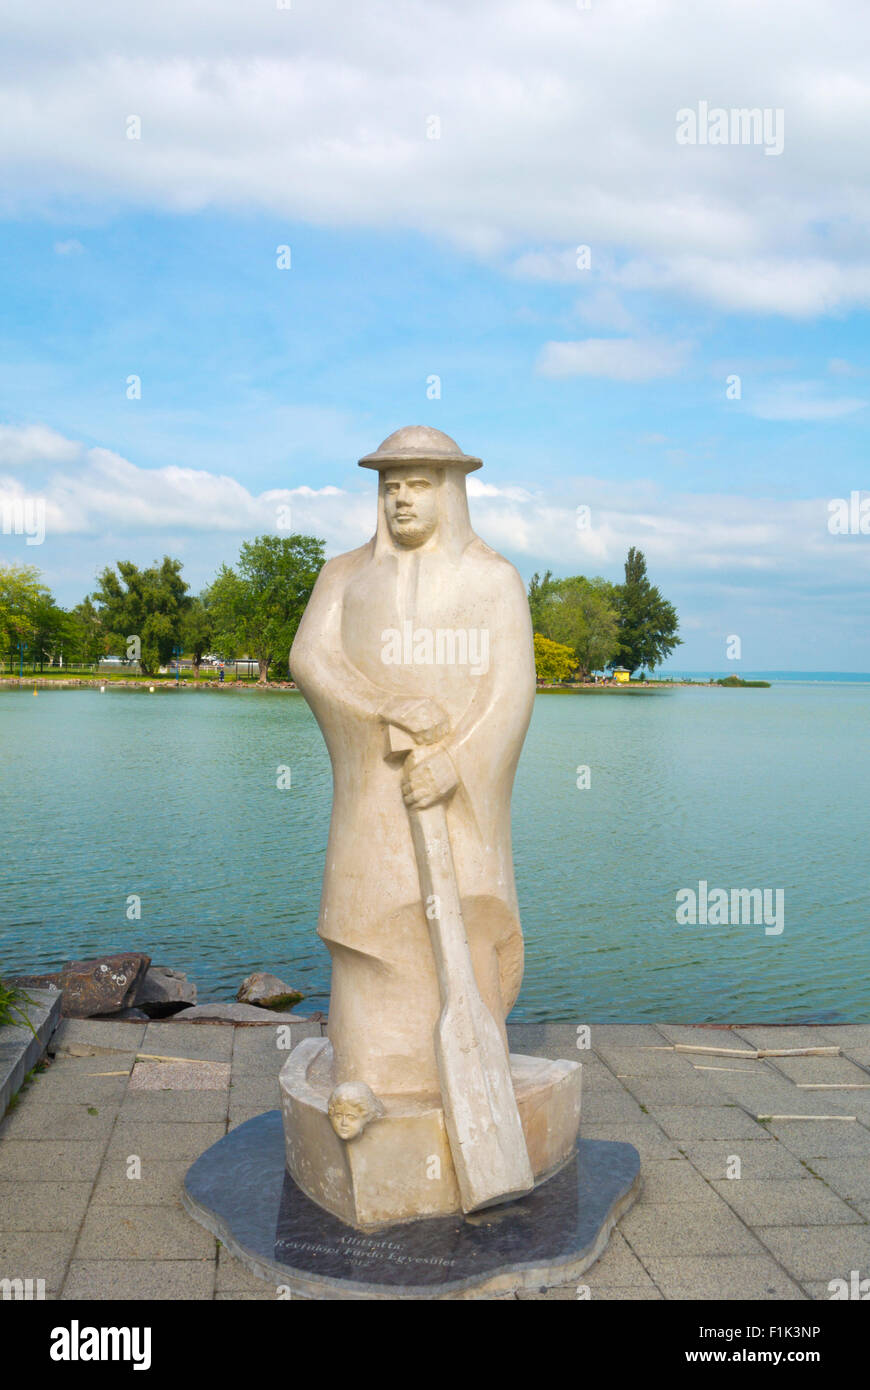 Általános statue, Revfulop, Lake Balaton, Hungary, Europe Stock Photo